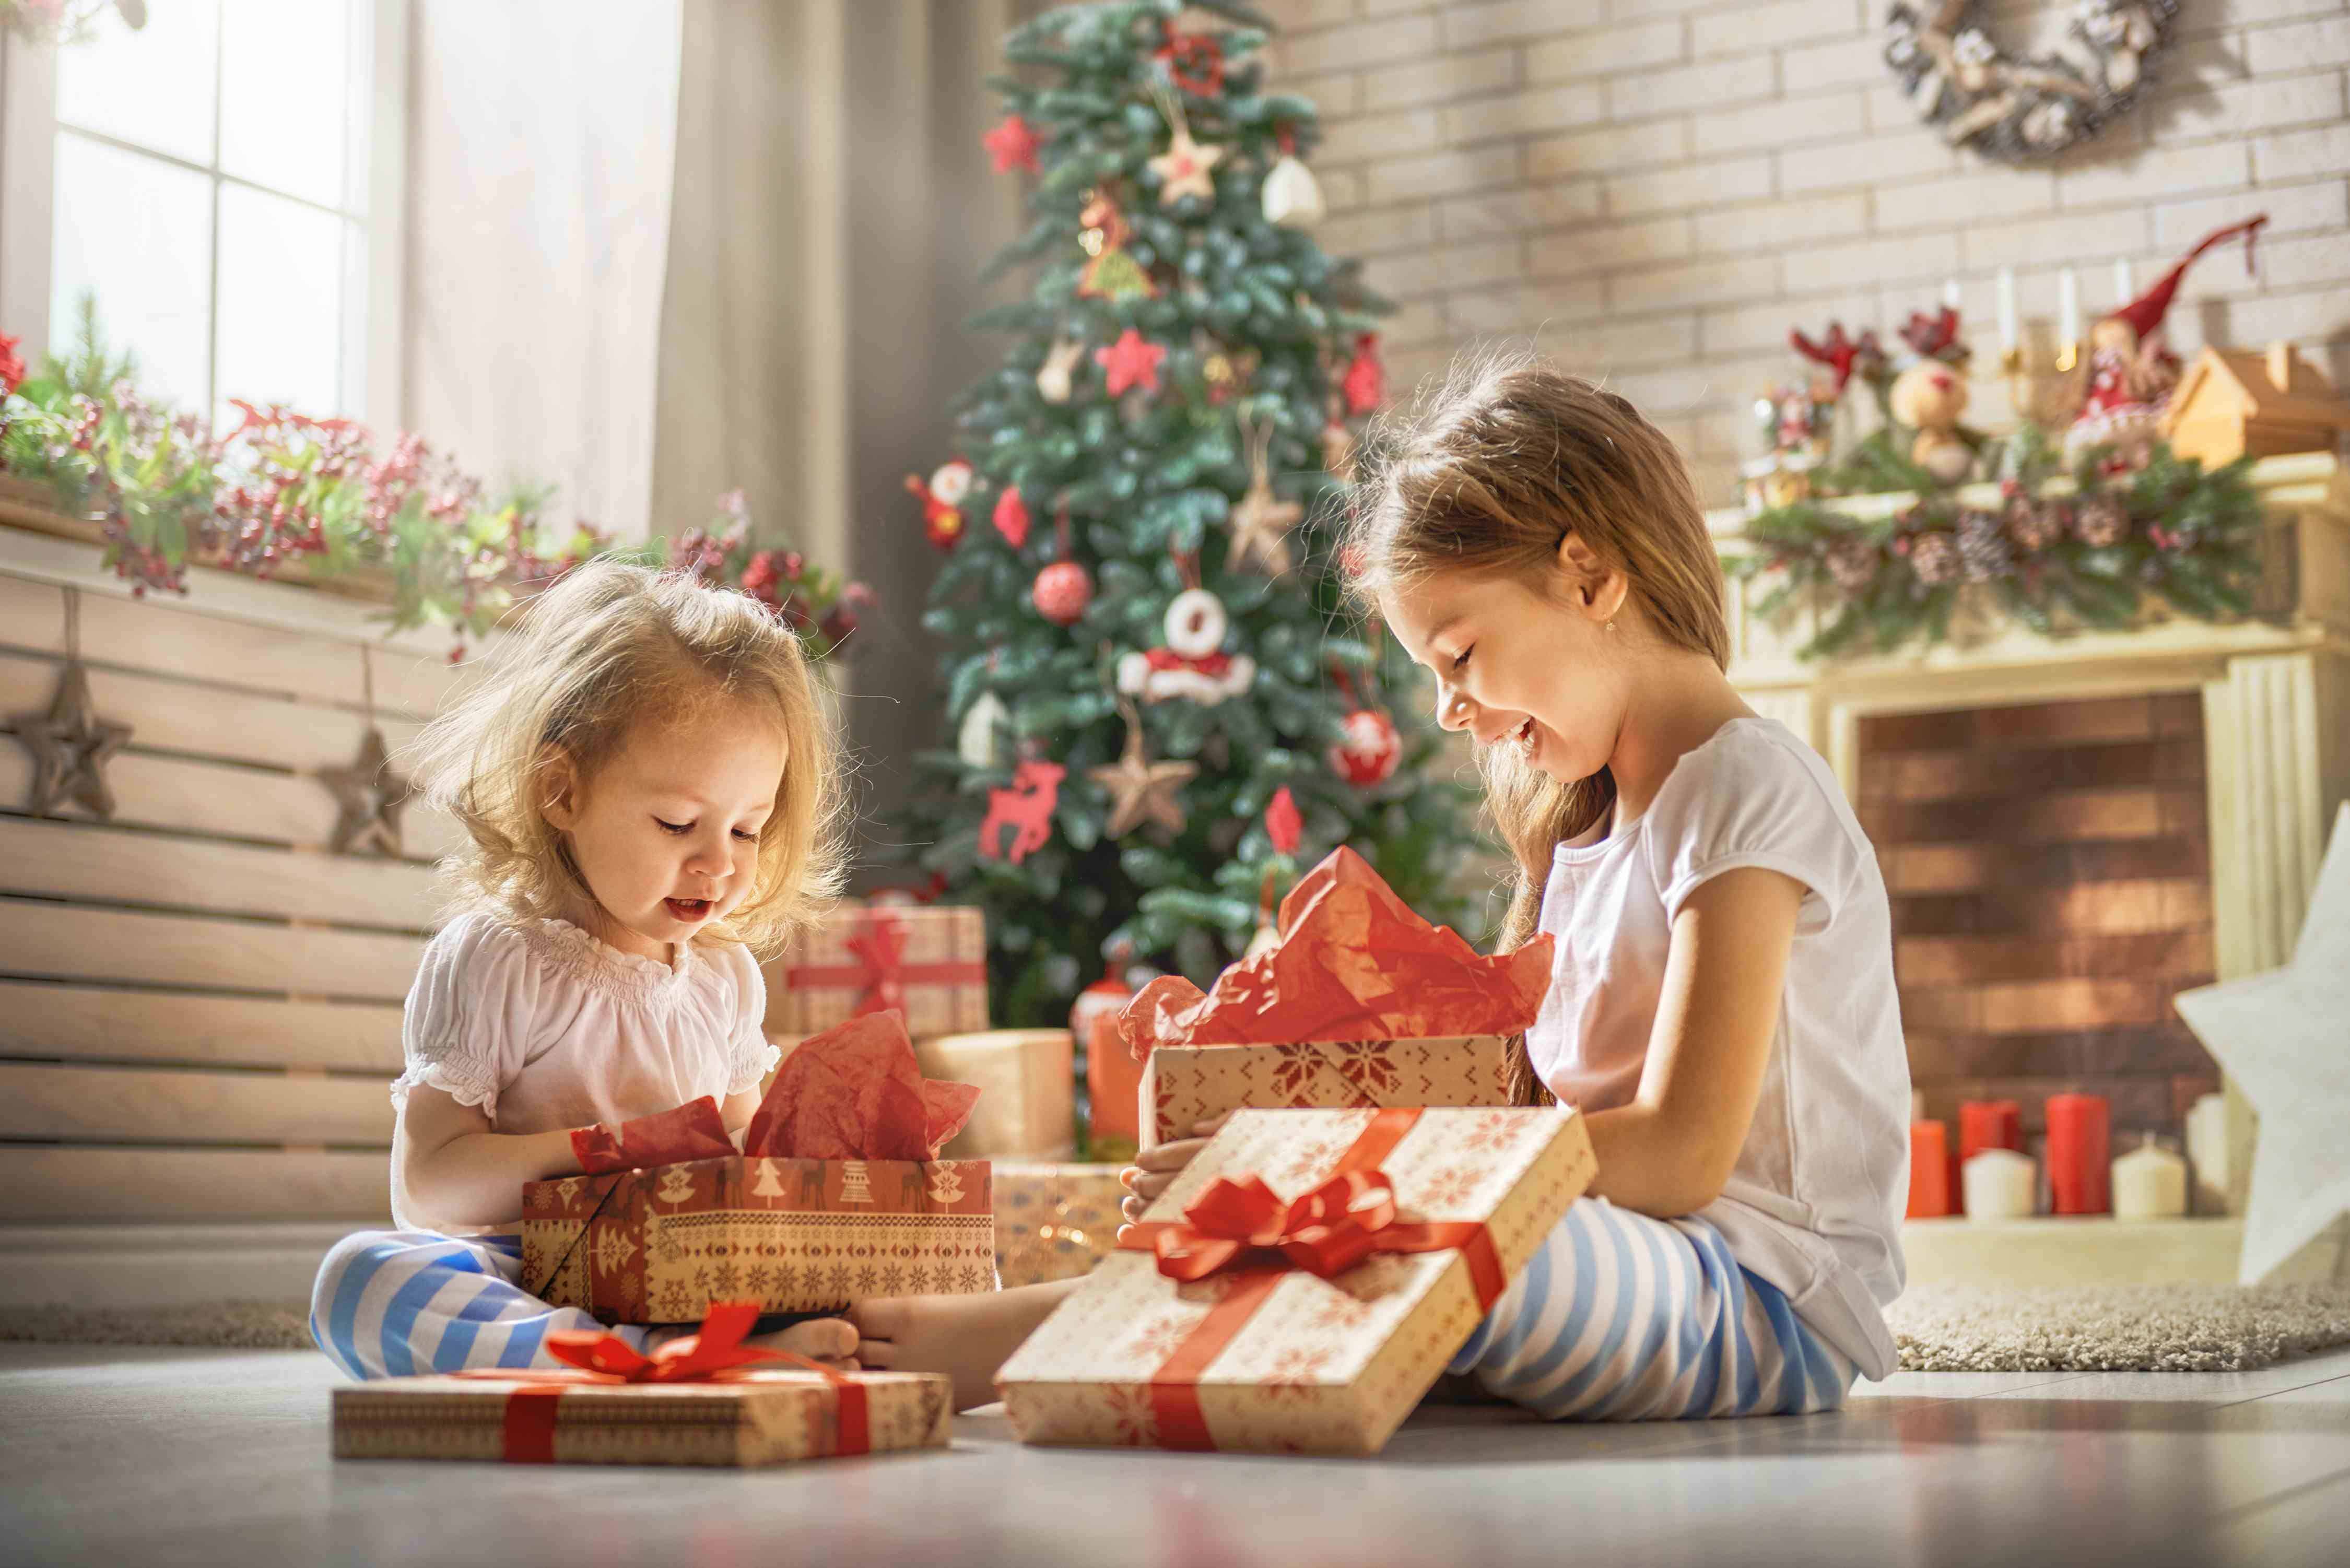 Jugar juntos: regalos de juegos para compartir en Navidad - Diario Libre